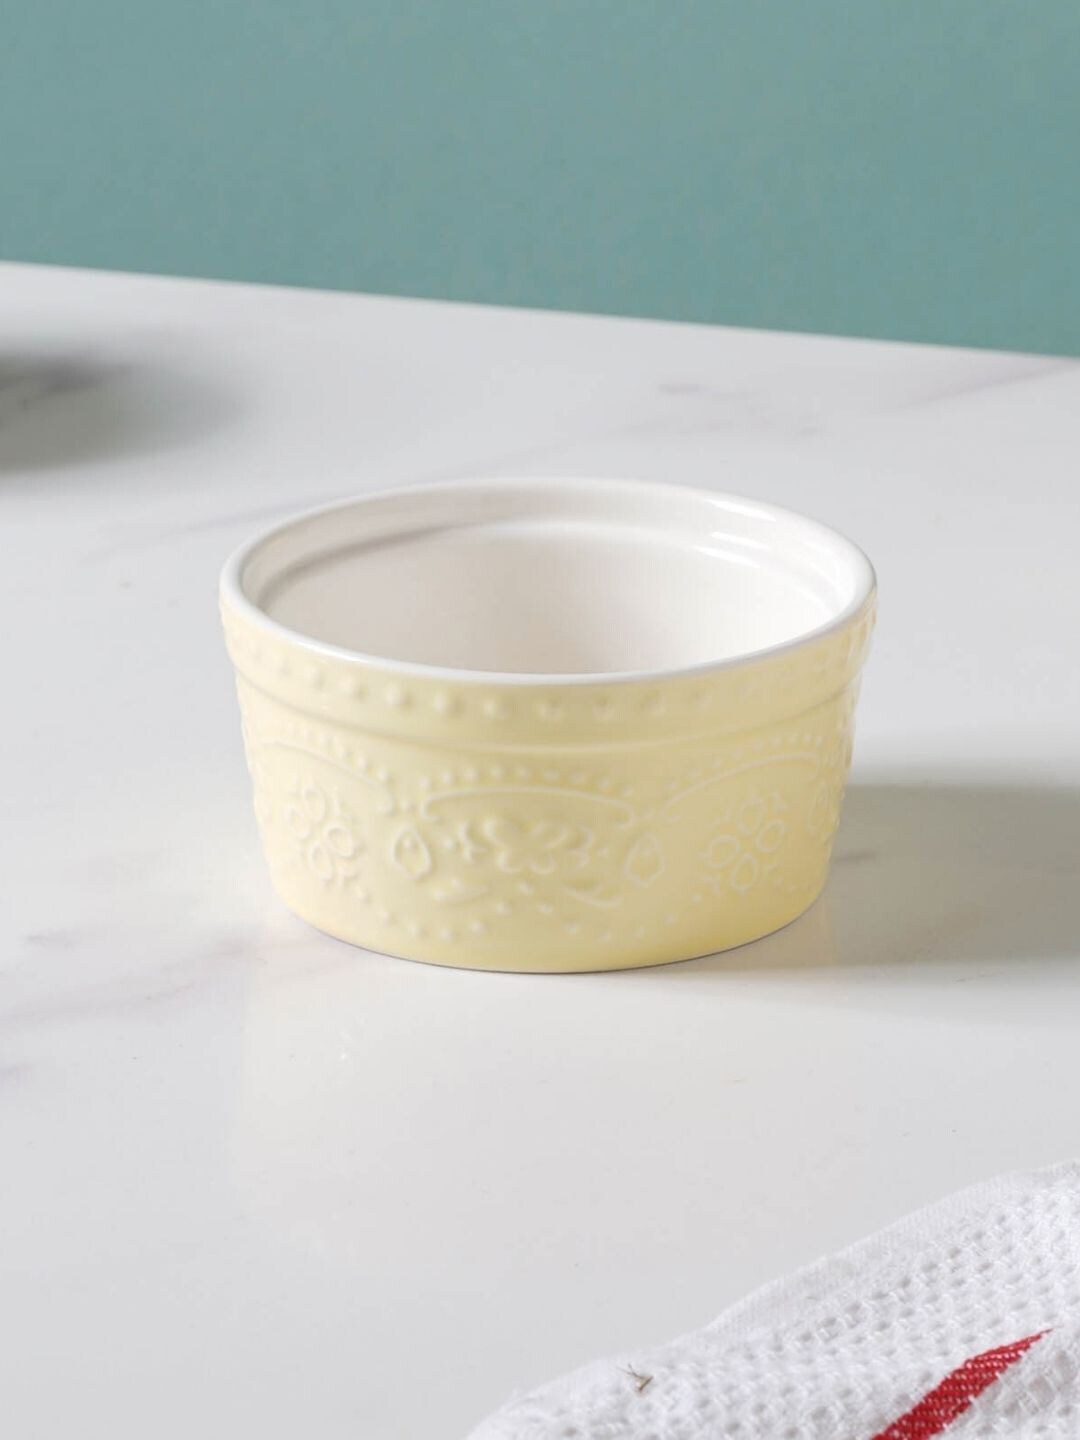 Nestasia White and Cream Textured Ceramic Pudding Bowl - 200 ml Price in India